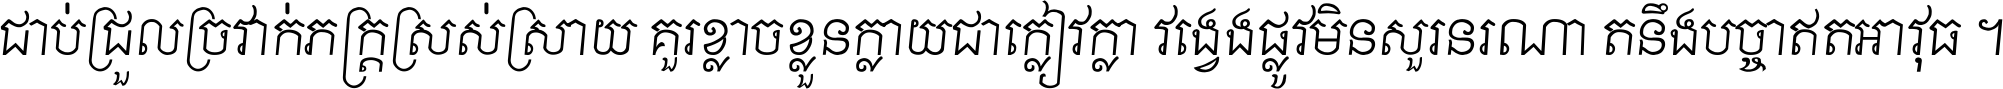 Khmer Chhay Text 8